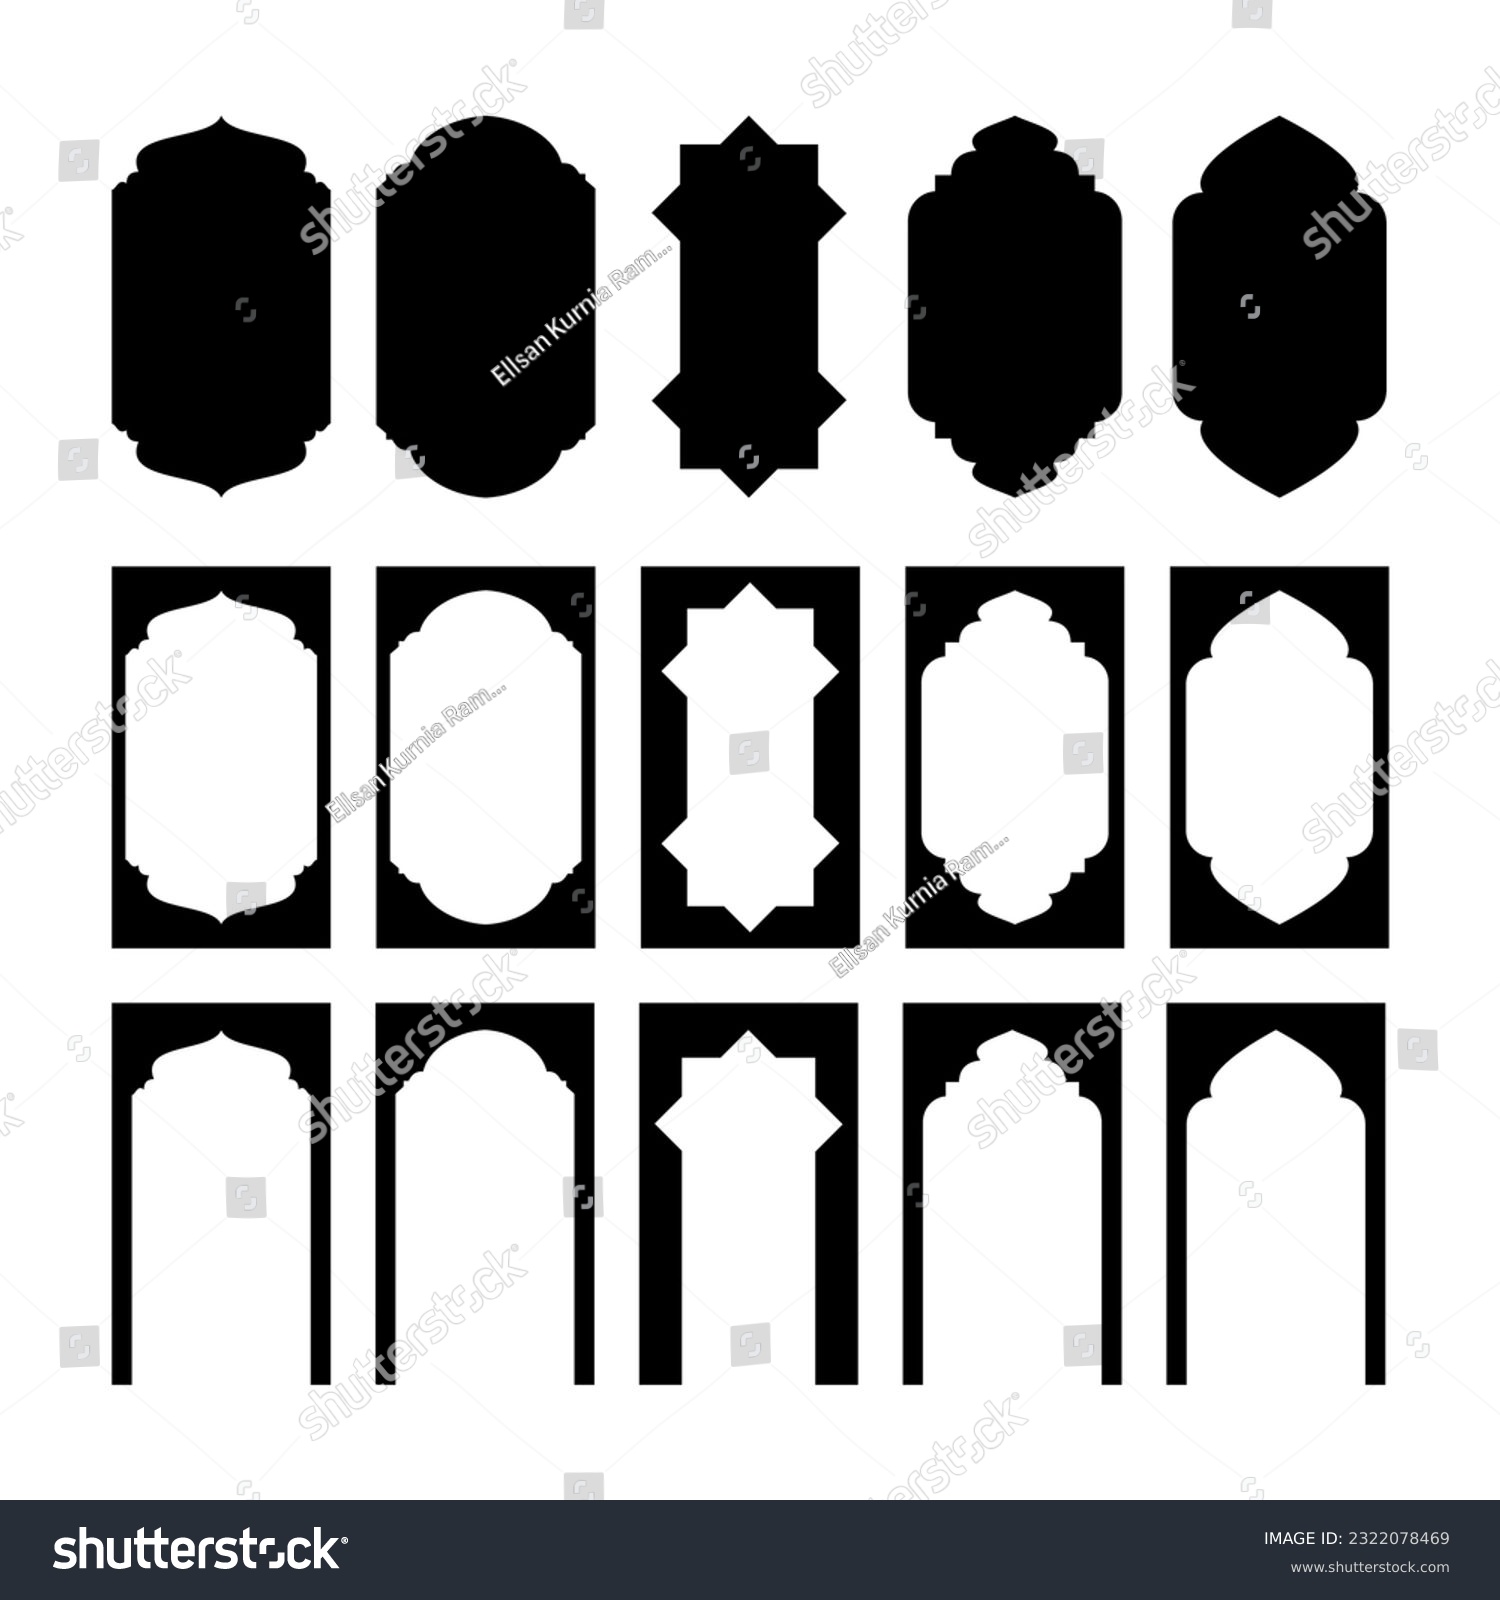 SVG of vektor gerbang masjid bisa untuk hiasan desain, ilustrasi, dan bahan edit svg